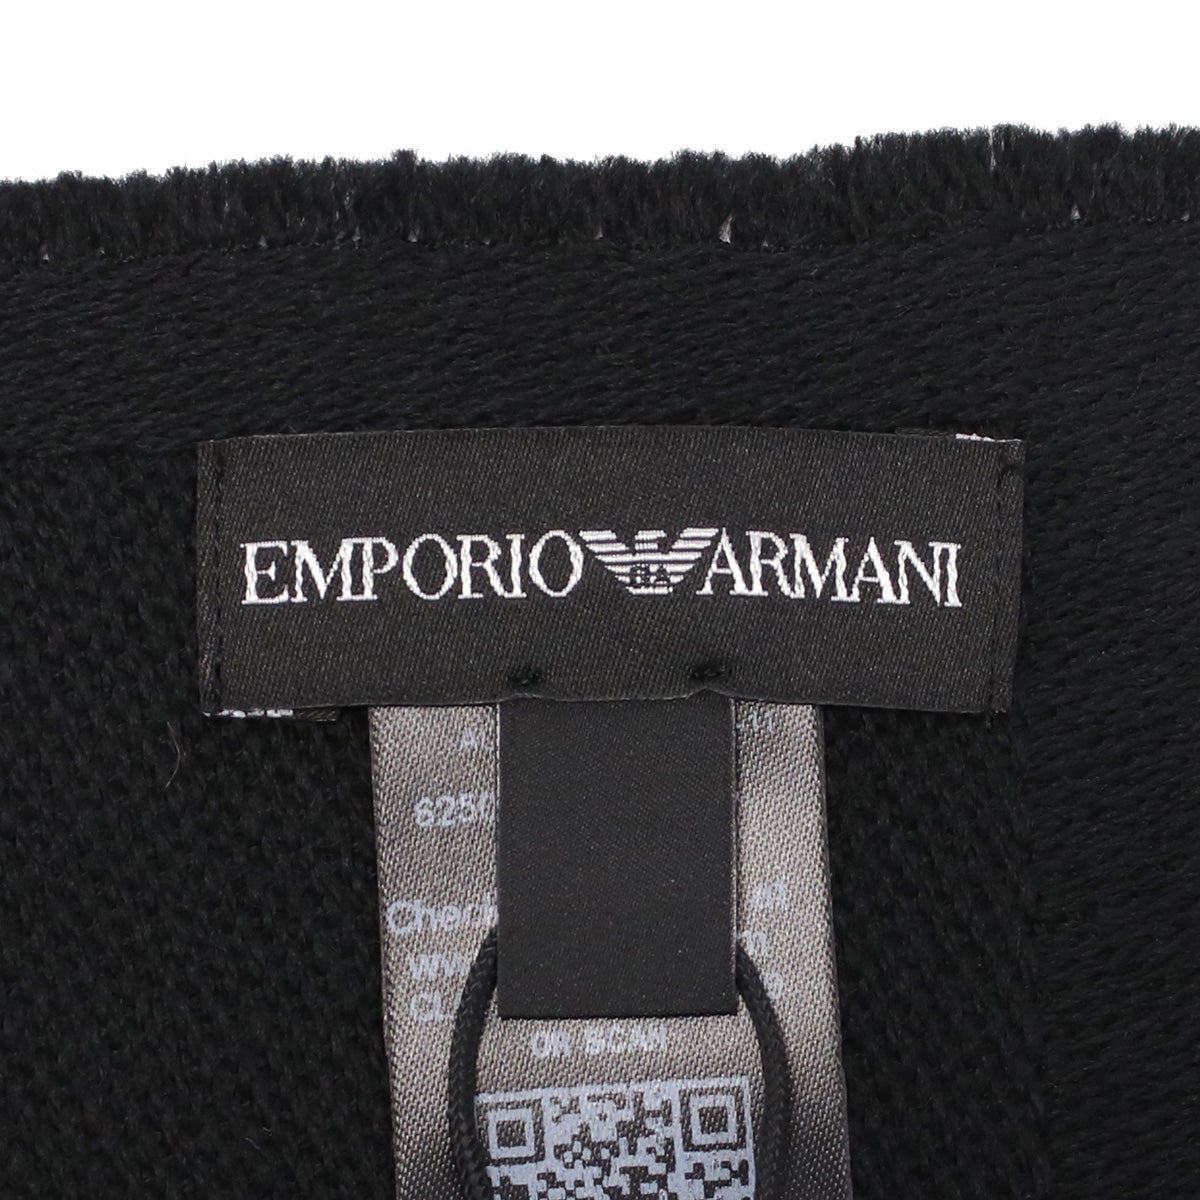 Emporio Armani エンポリオ・アルマーニ 625009 マフラー BLACK ブラック メンズ